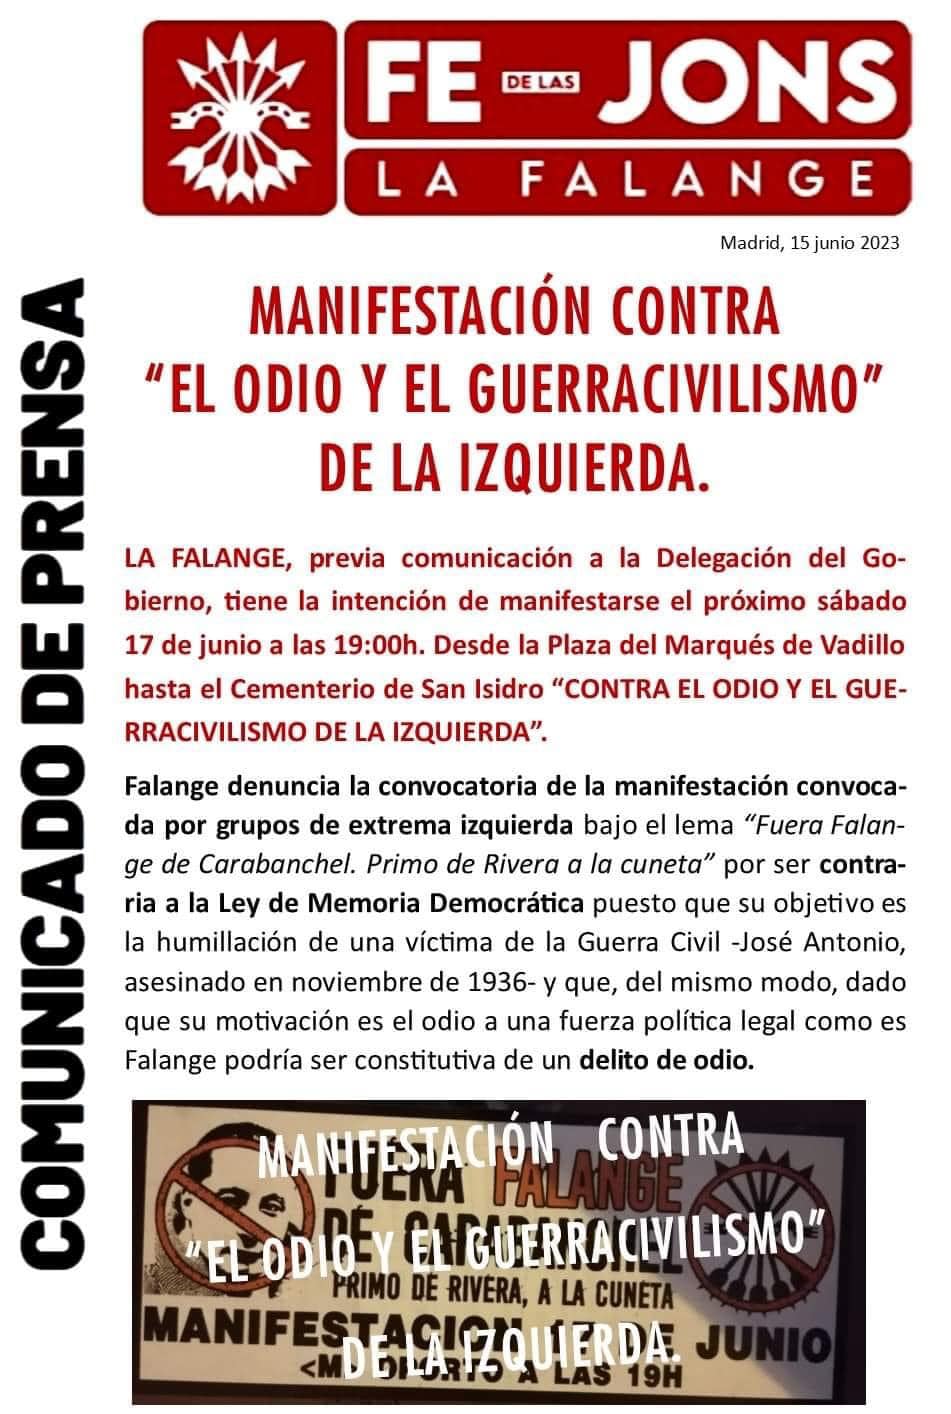 Manifestación de Falange Española contra el odio de la extrema izquierda